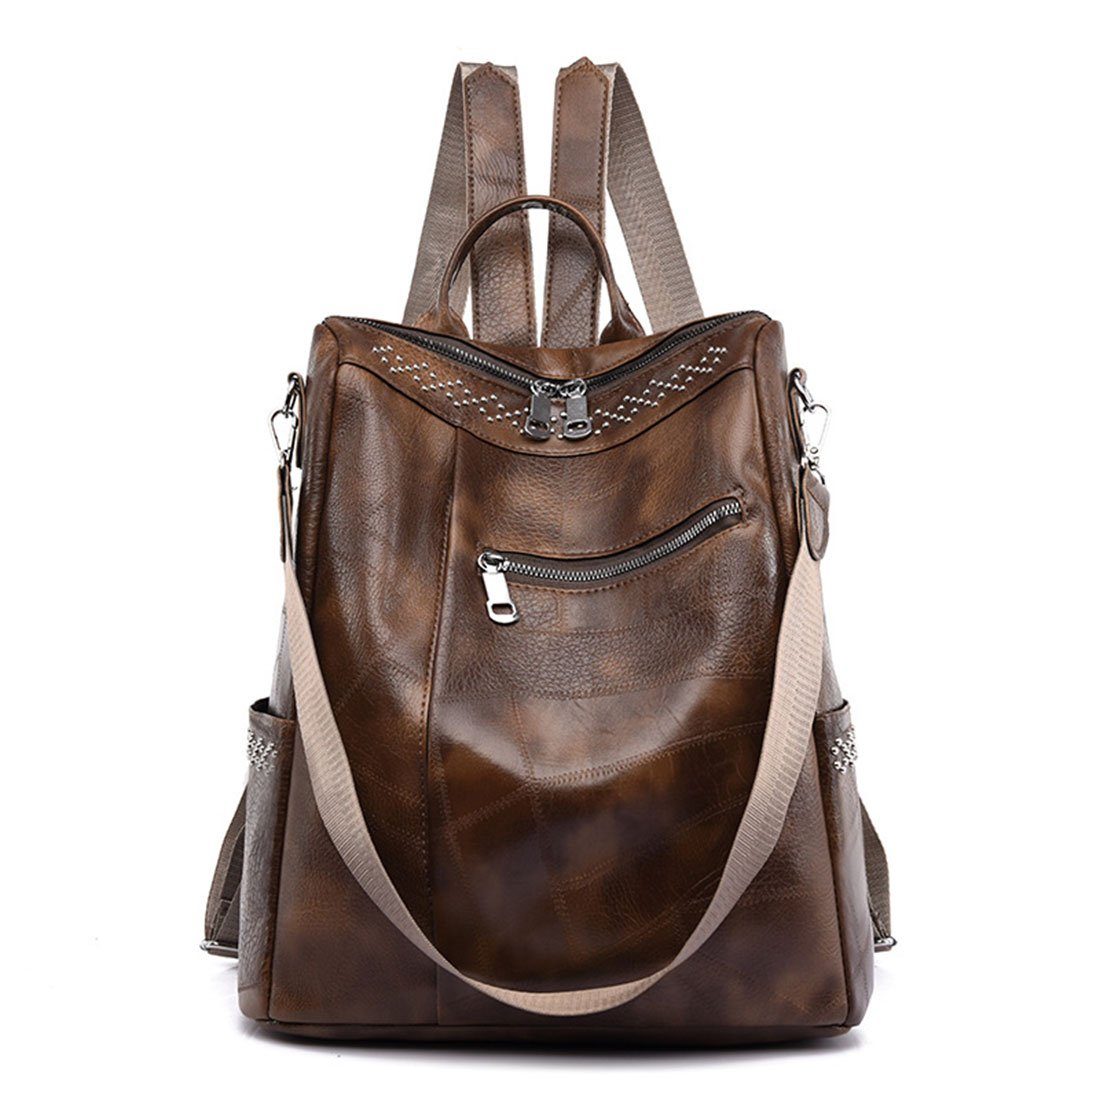 HNDSG Cityrucksack Damen Fashion Travel Shoulder Backpack,Soft Leather Schoolbag Backpack Gelb